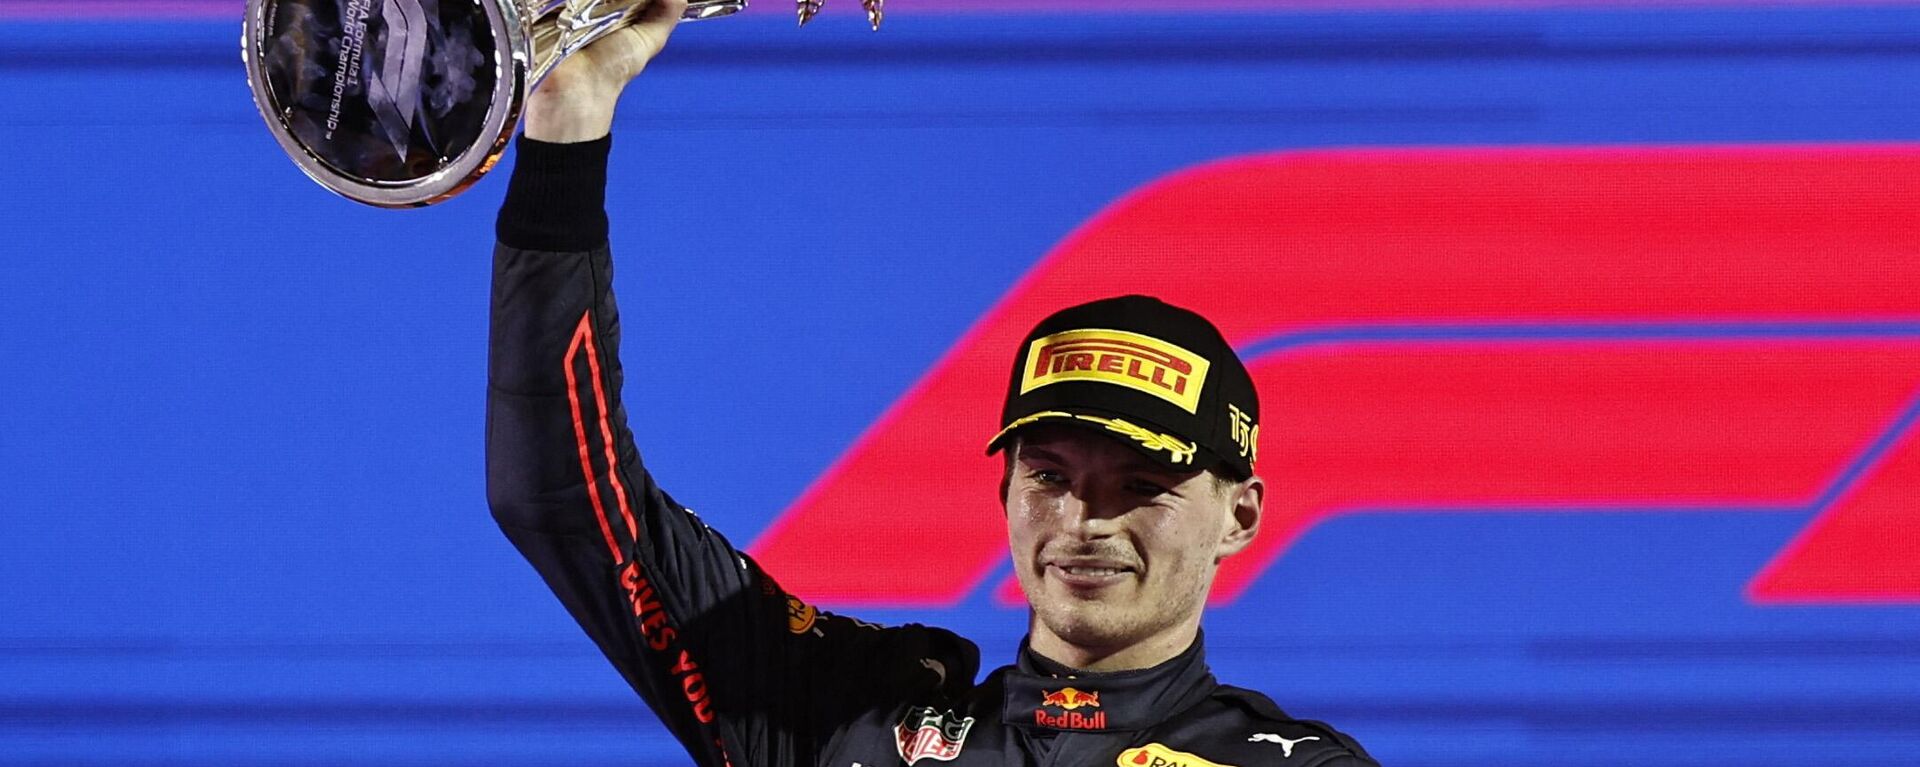 Formula 1 Dünya Şampiyonası'nda sezonun ikinci ayağı Suudi Arabistan Grand Prix'sini Red Bull takımının Hollandalı pilotu Max Verstappen kazandı. - Sputnik Türkiye, 1920, 27.03.2022